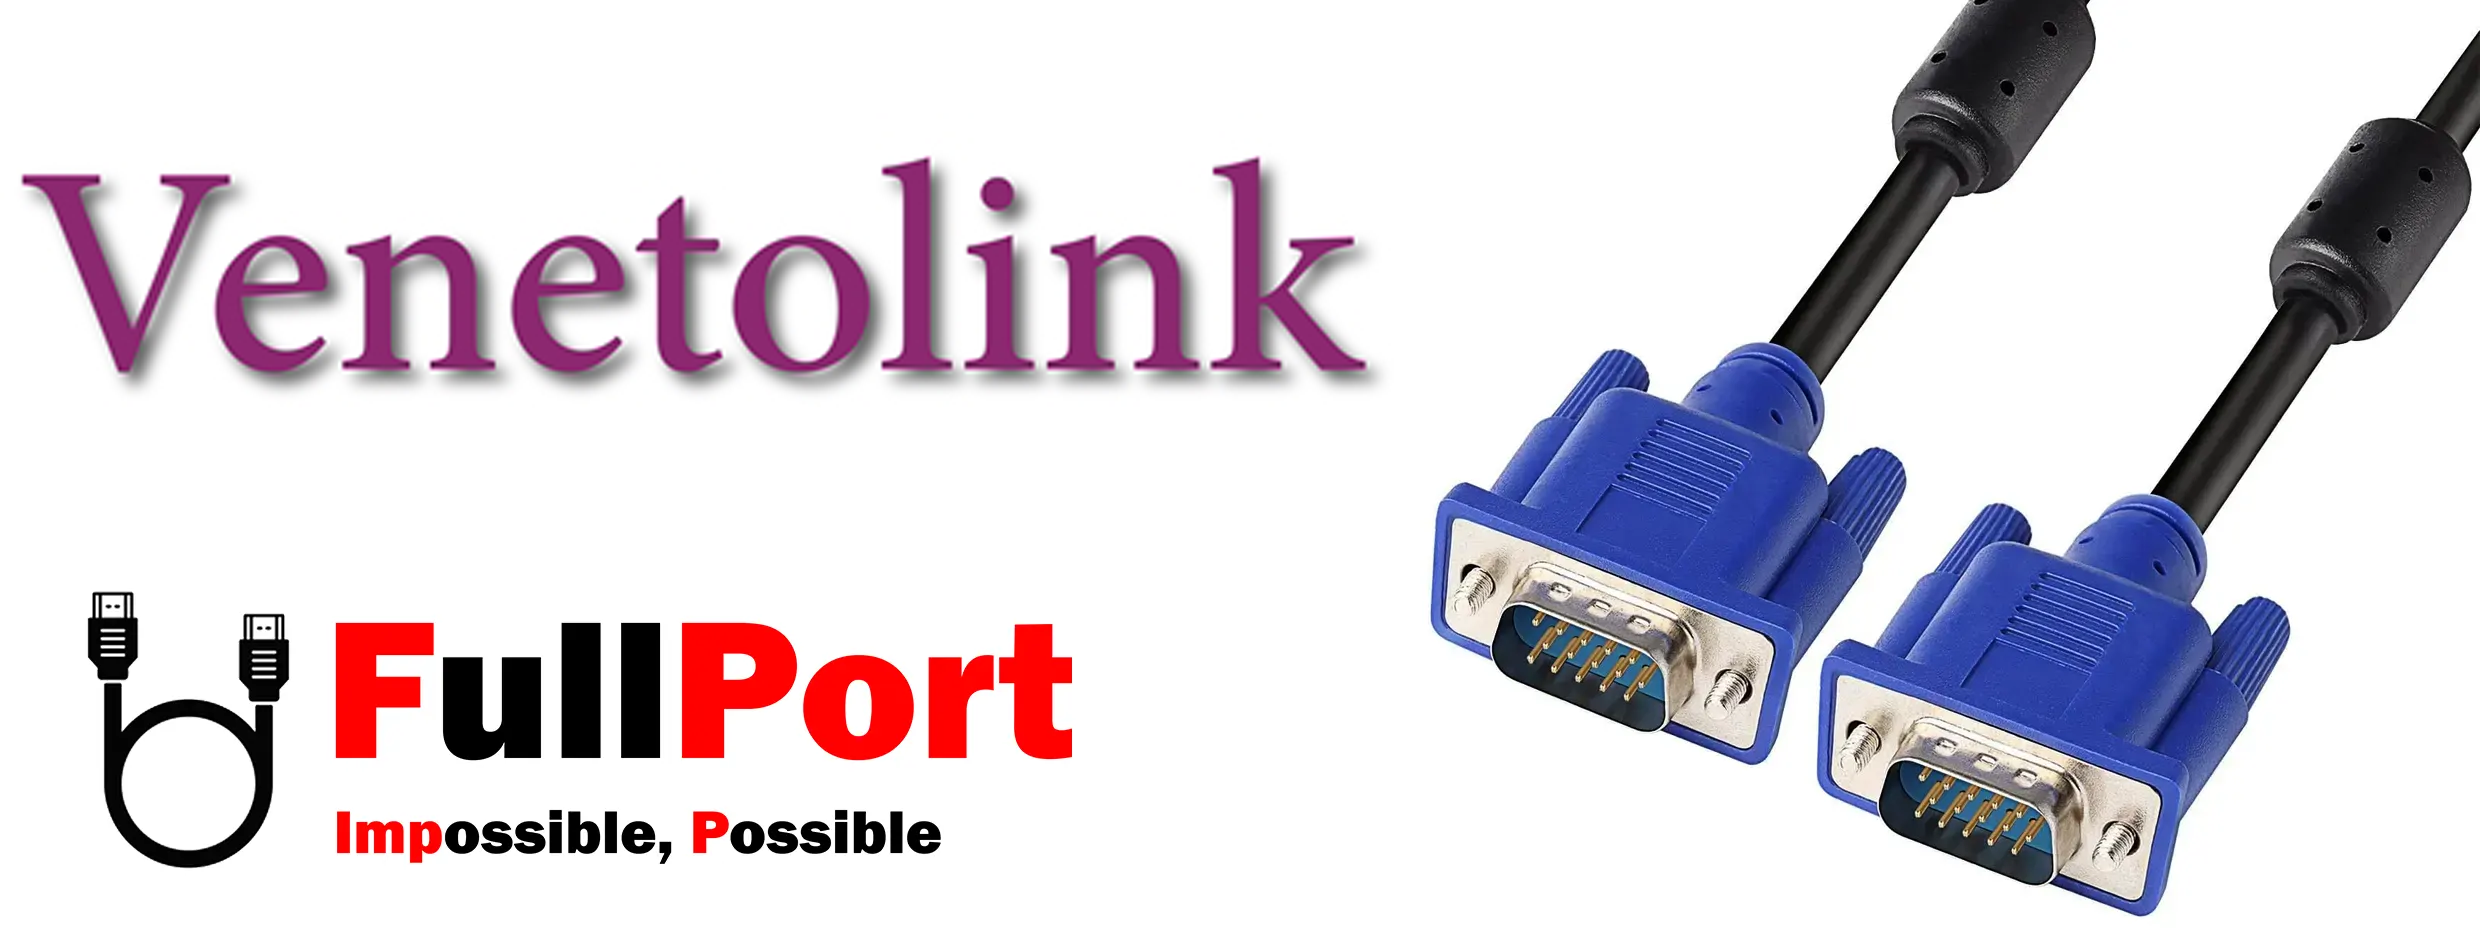 خرید اینترنتی کابل مانیتور VGA برند ونتولینک | Venetolink با گارانتی تست و تضمین اصالت کالا از فروشگاه اینترنتی فول پورت